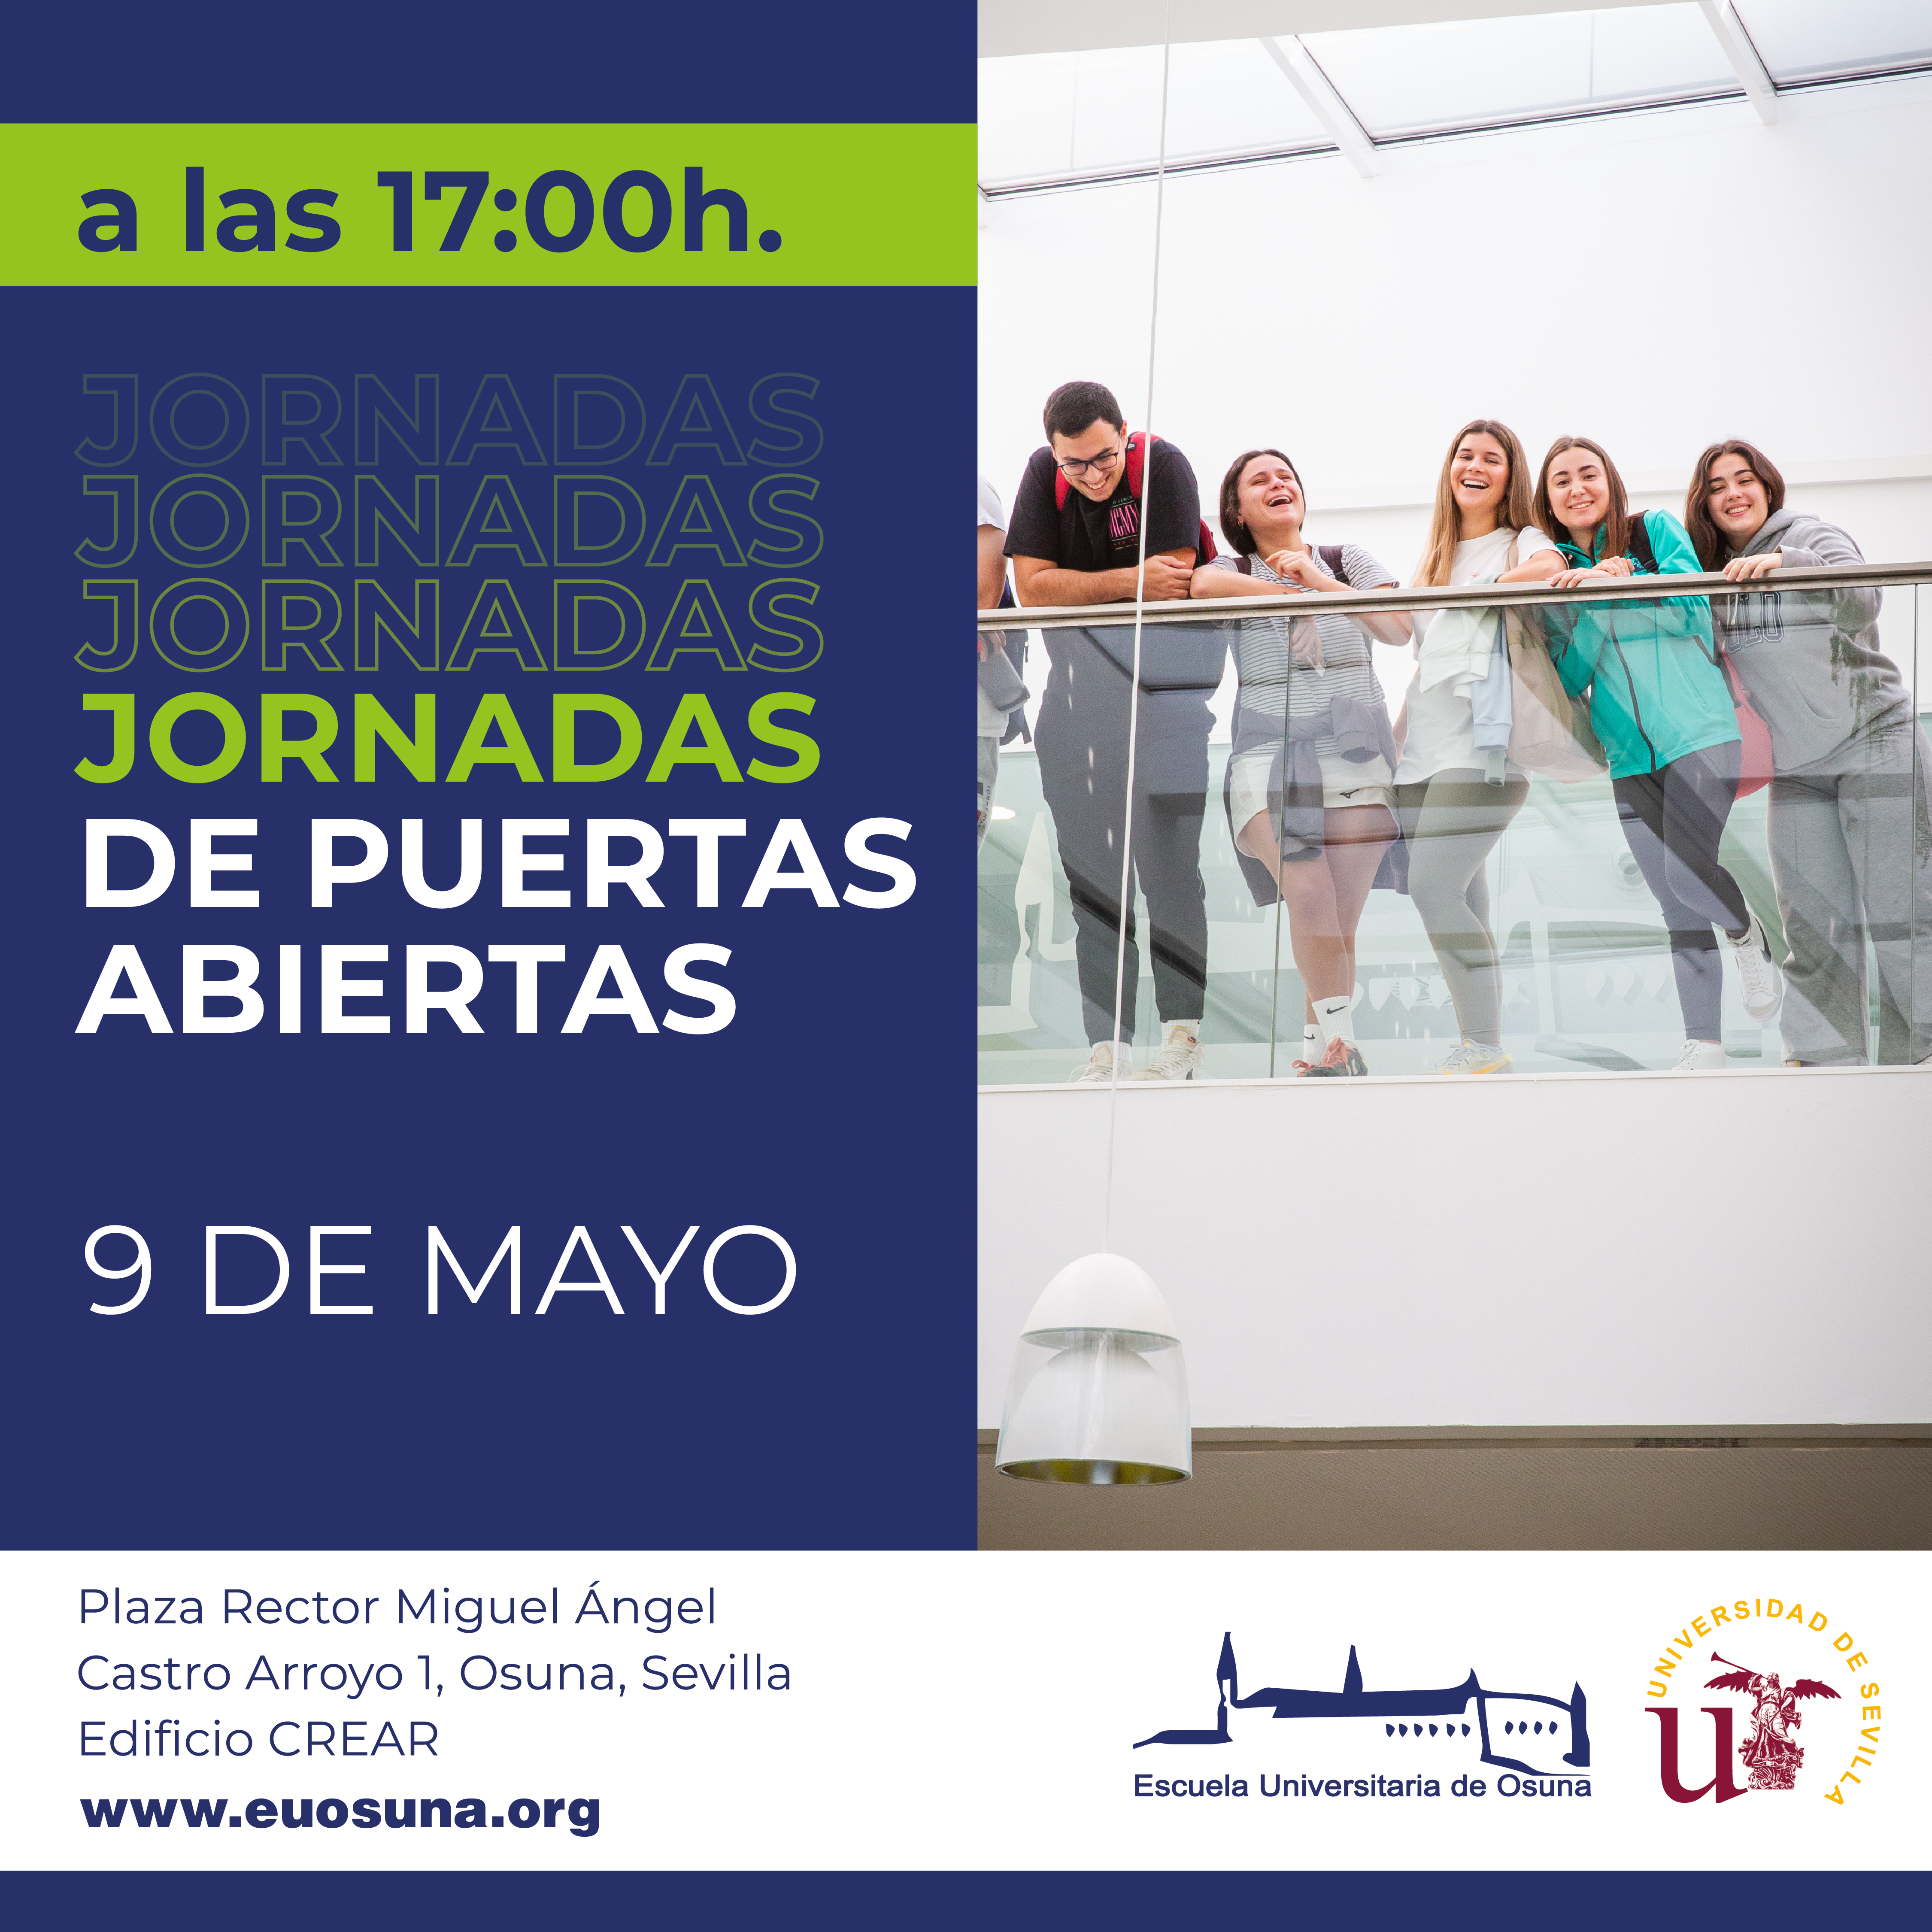 El Centro Universitario de Osuna celebrará unas Jornadas de Puertas Abiertas el 9 de mayo